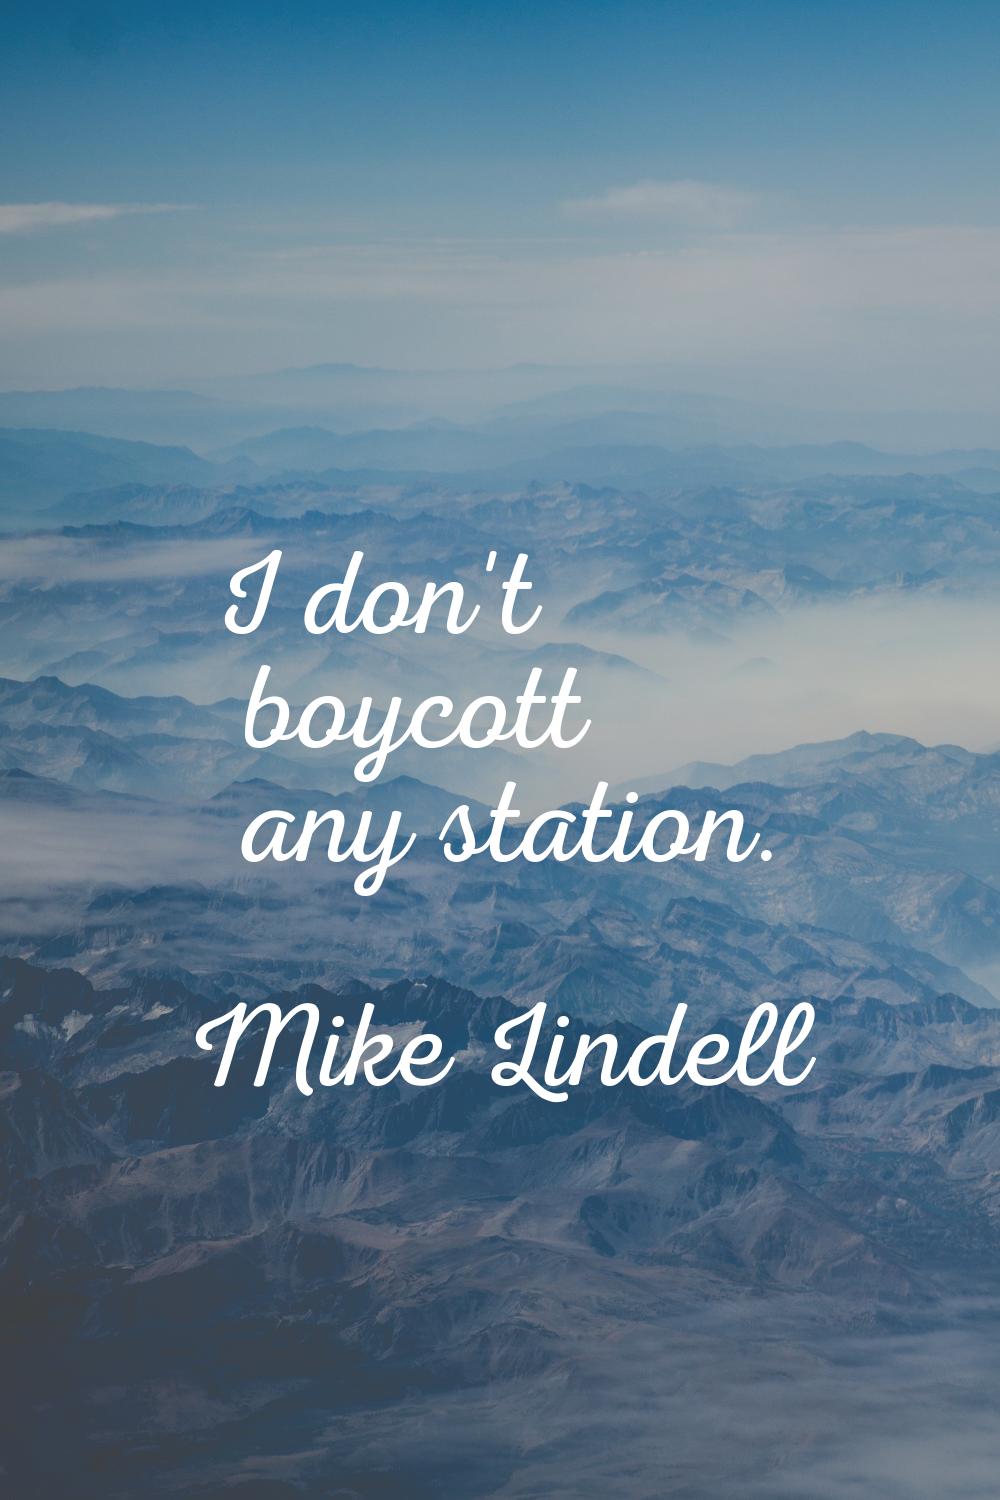 I don't boycott any station.